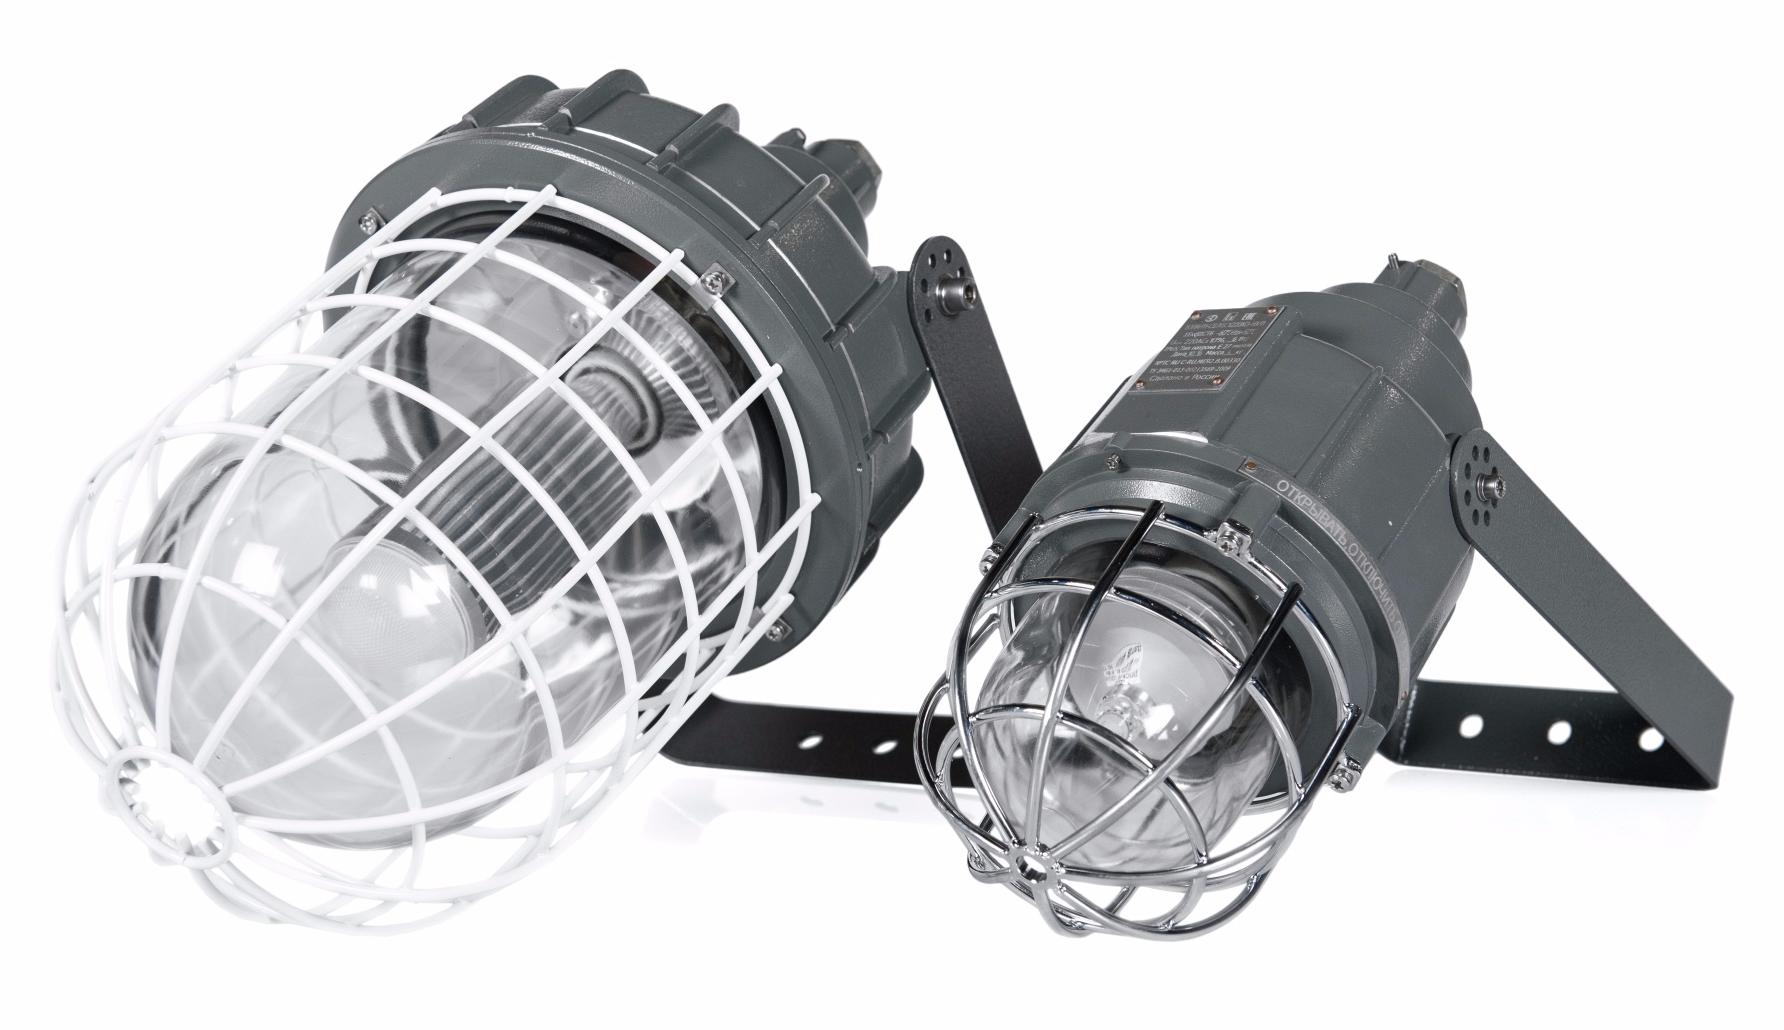 Взрывозащищенный светильник для ламп накаливания, компактных люминесцентных ламп и светодиодных ламп ВЭЛАН 11